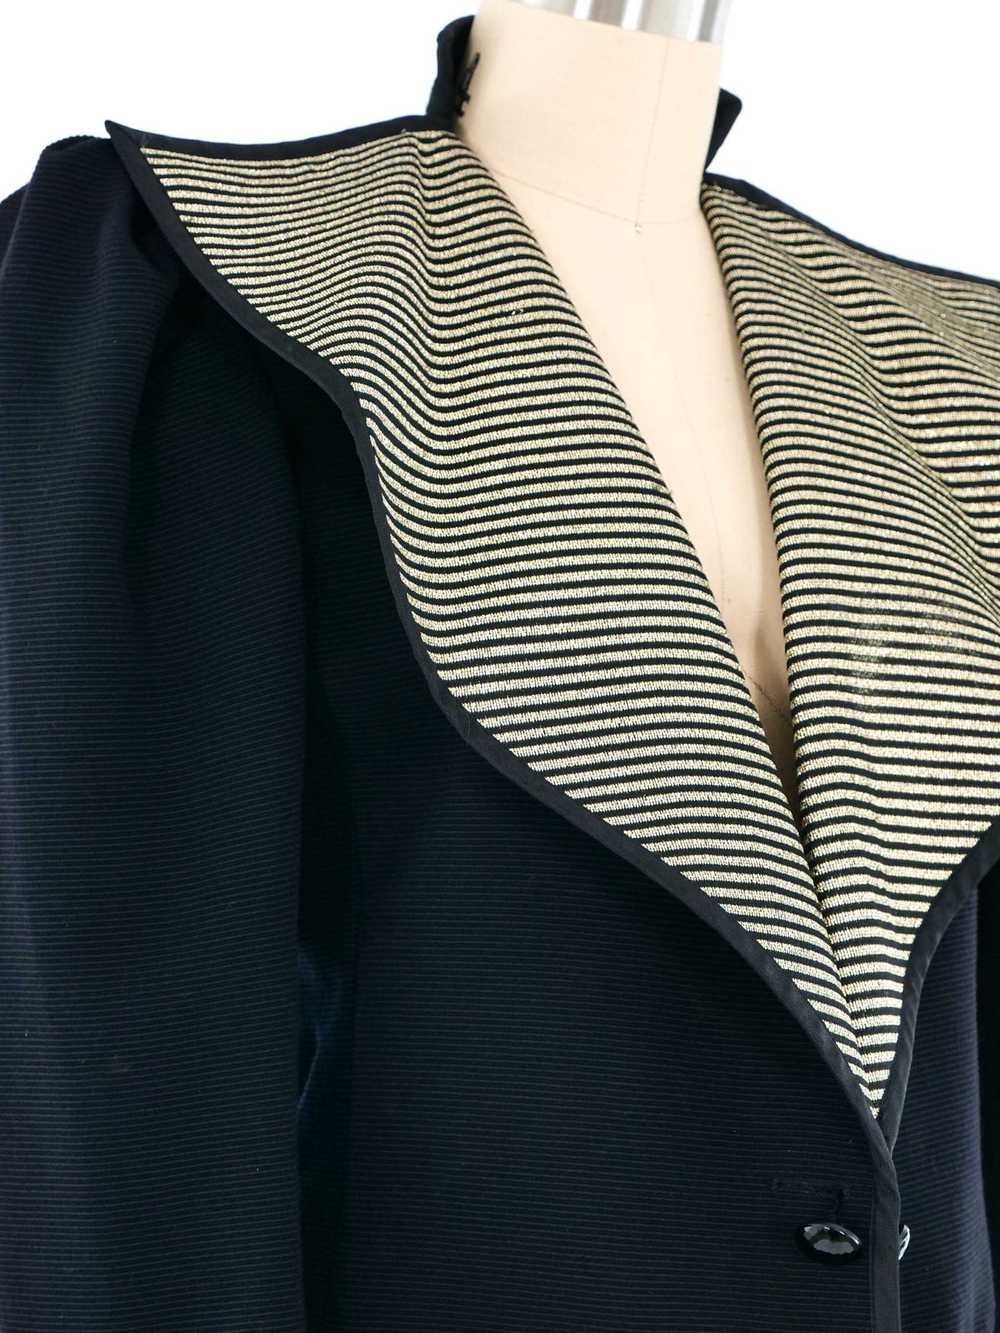 1981 Yves Saint Laurent Oversized Lapel Jacket - image 4